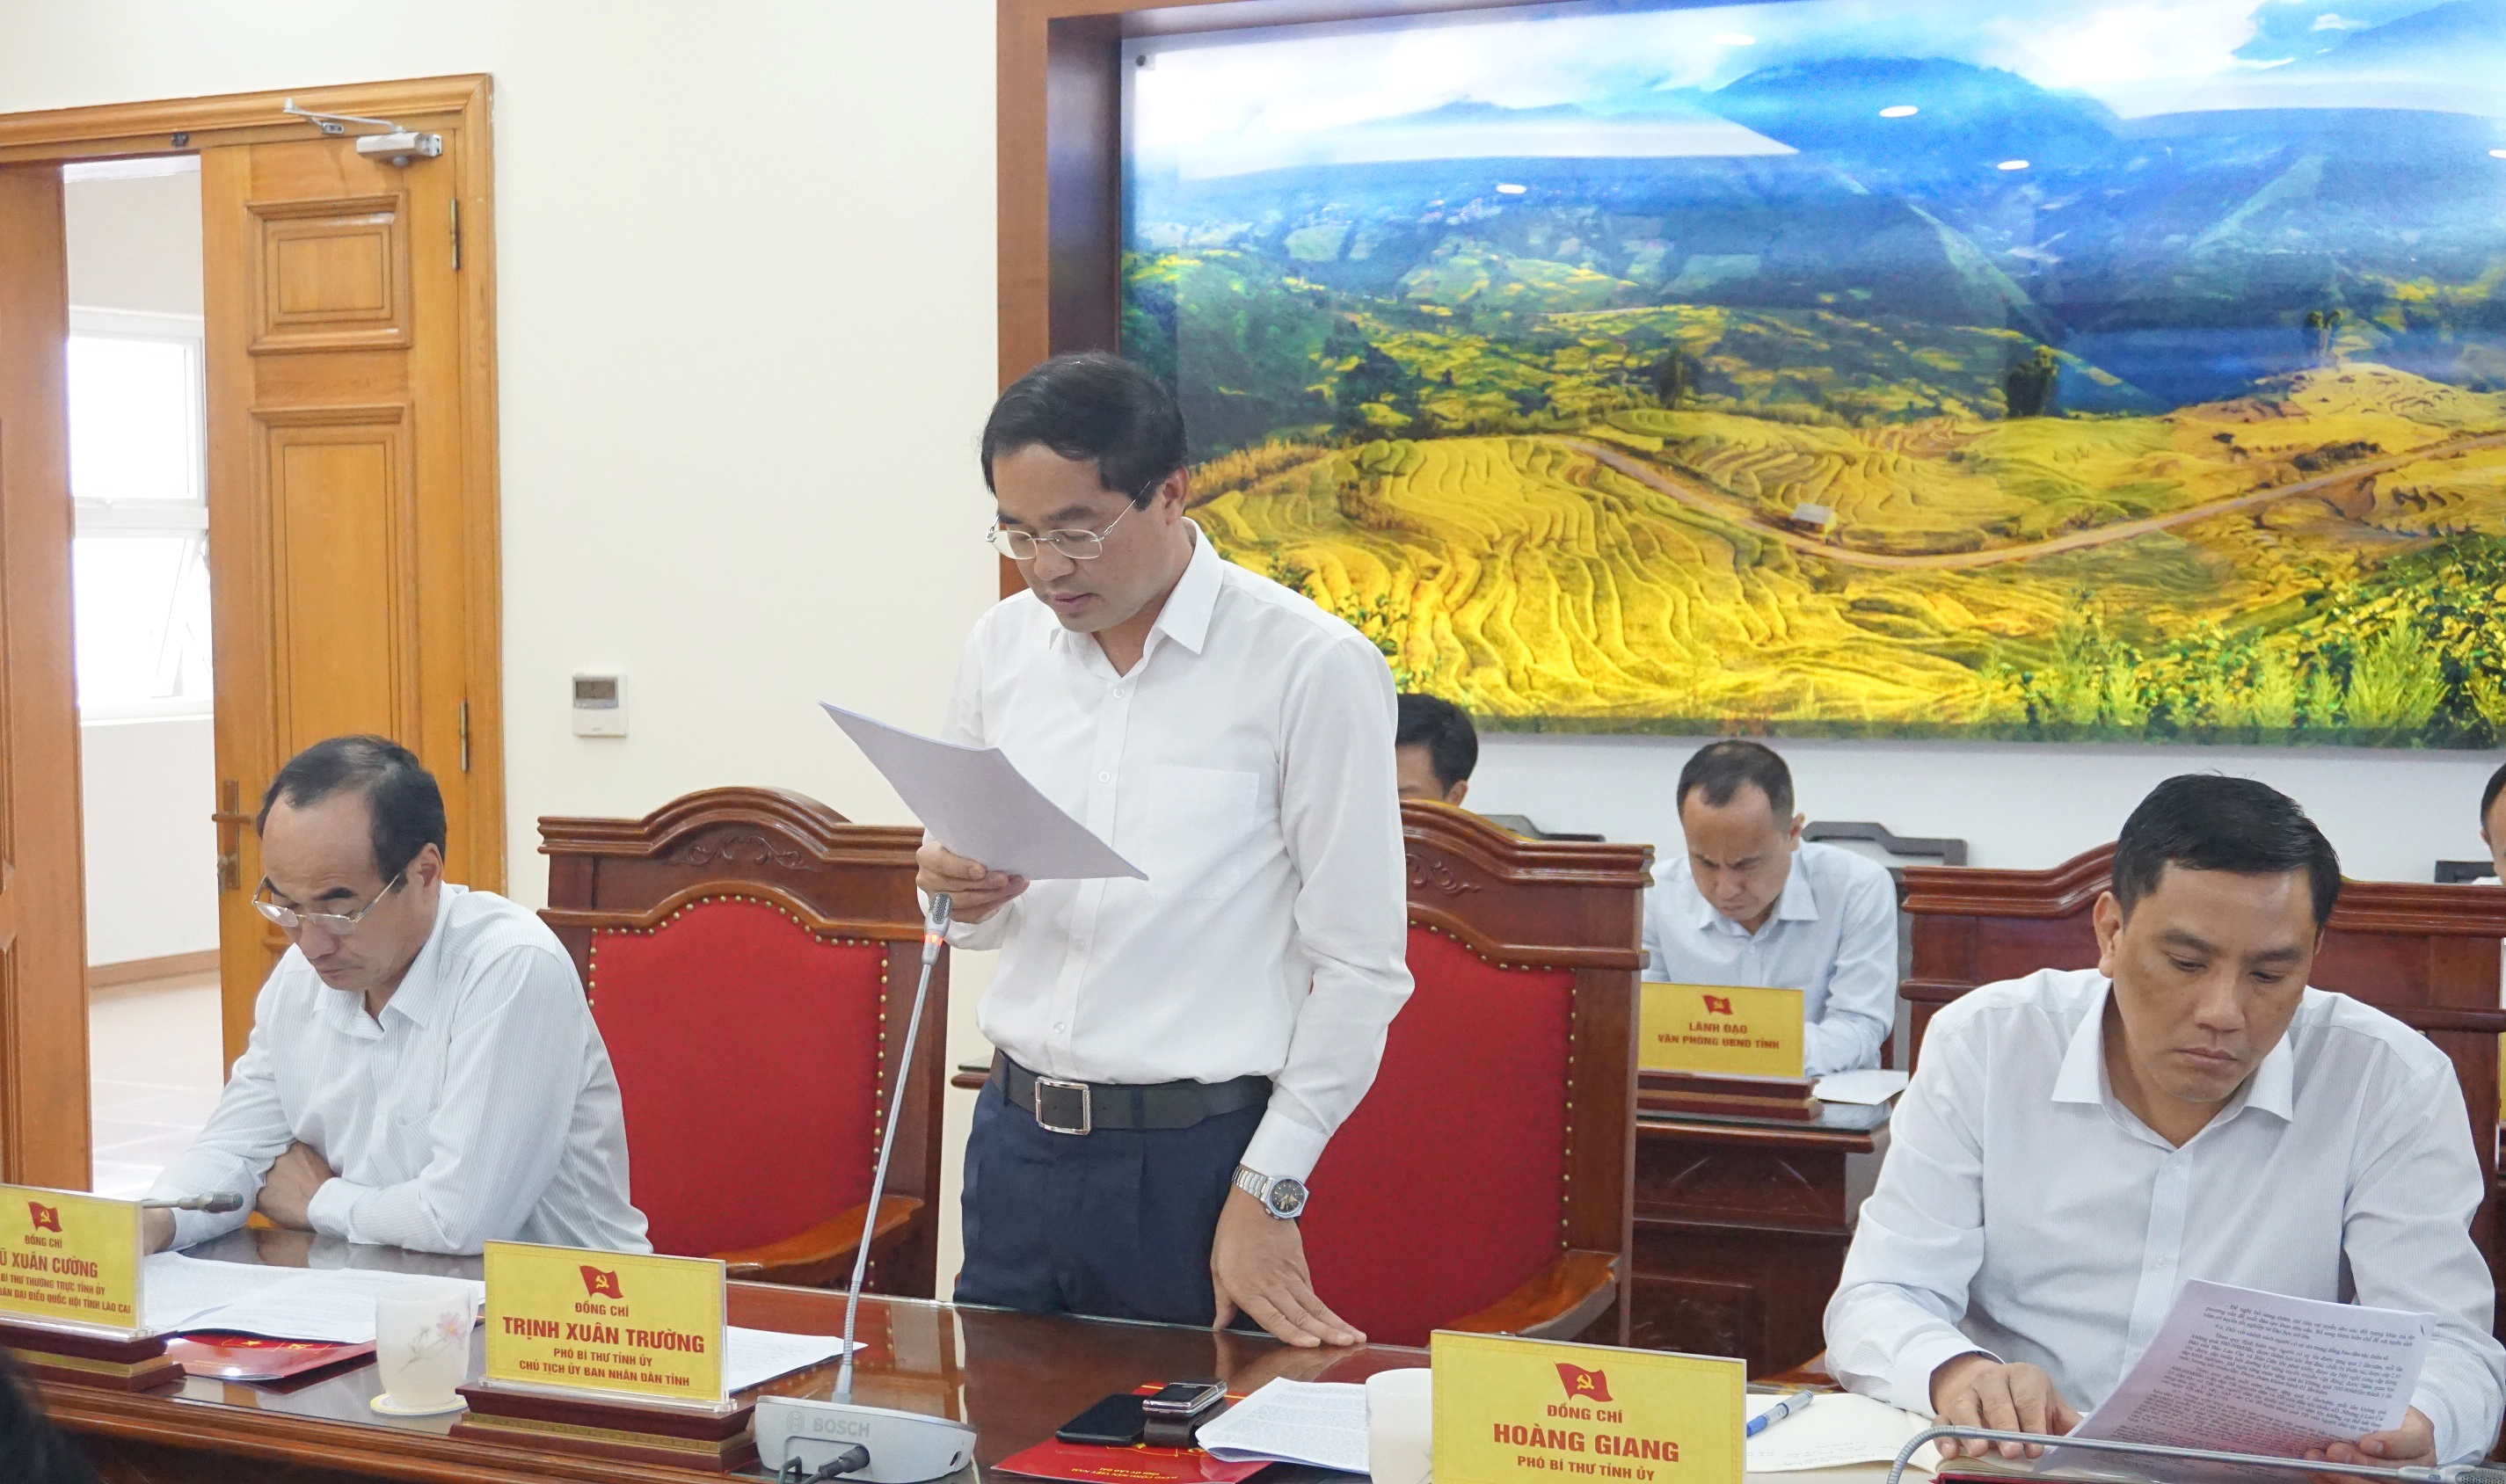 Đồng chí Trịnh Xuân Trường, Chủ tịch UBND tỉnh báo cáo tình hình phát triển kinh tế-xã hội của địa phương thời gian qua